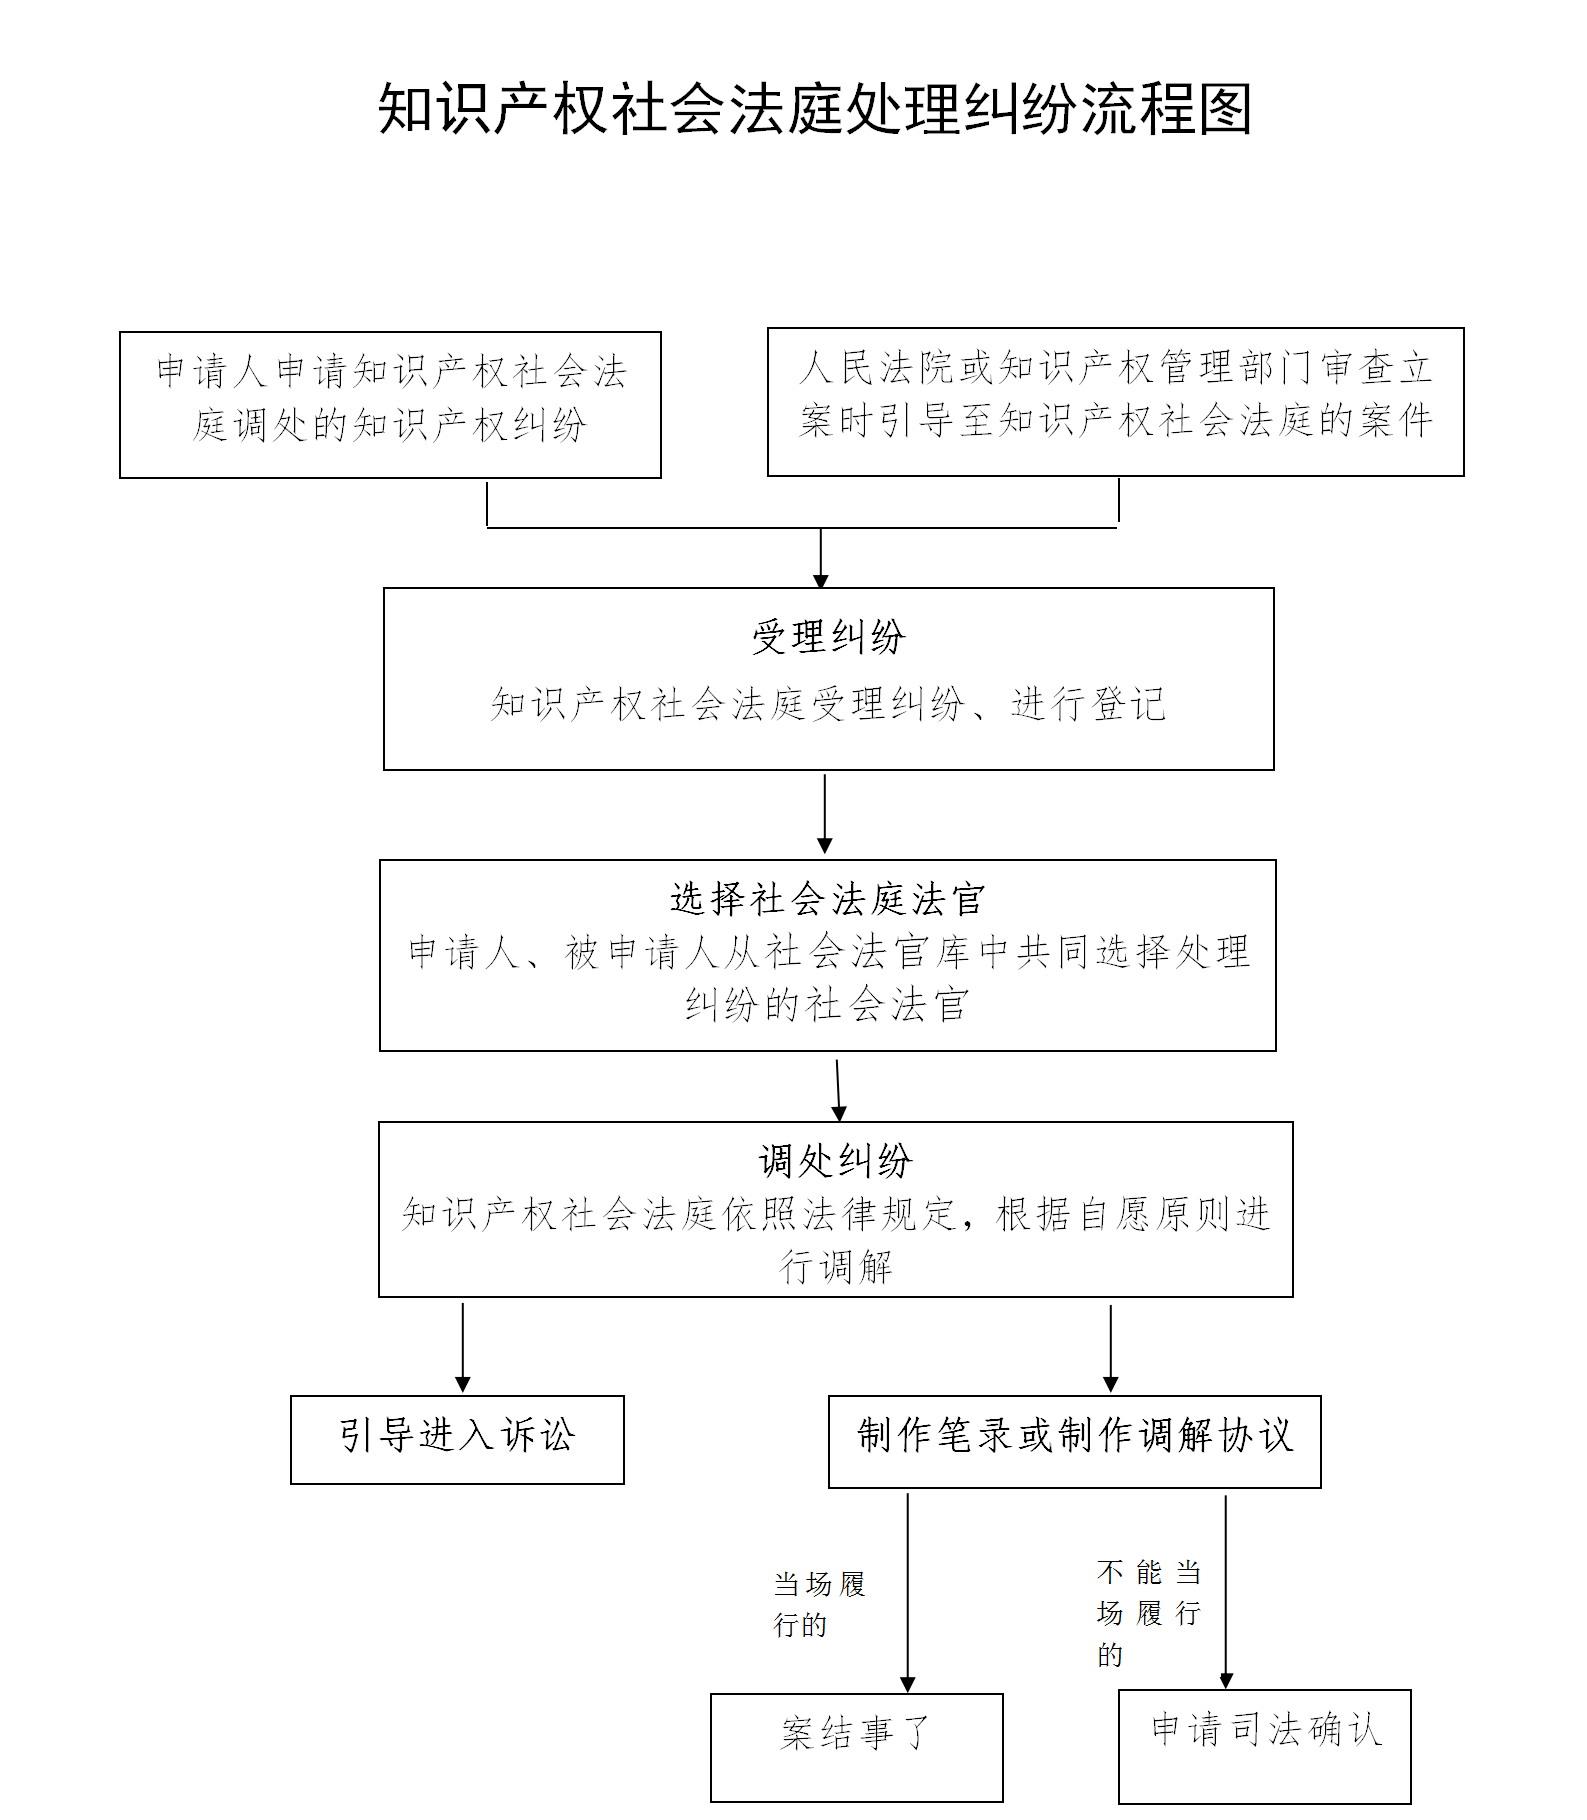 知识产权社会法庭工作制度(2013)_01.png.png